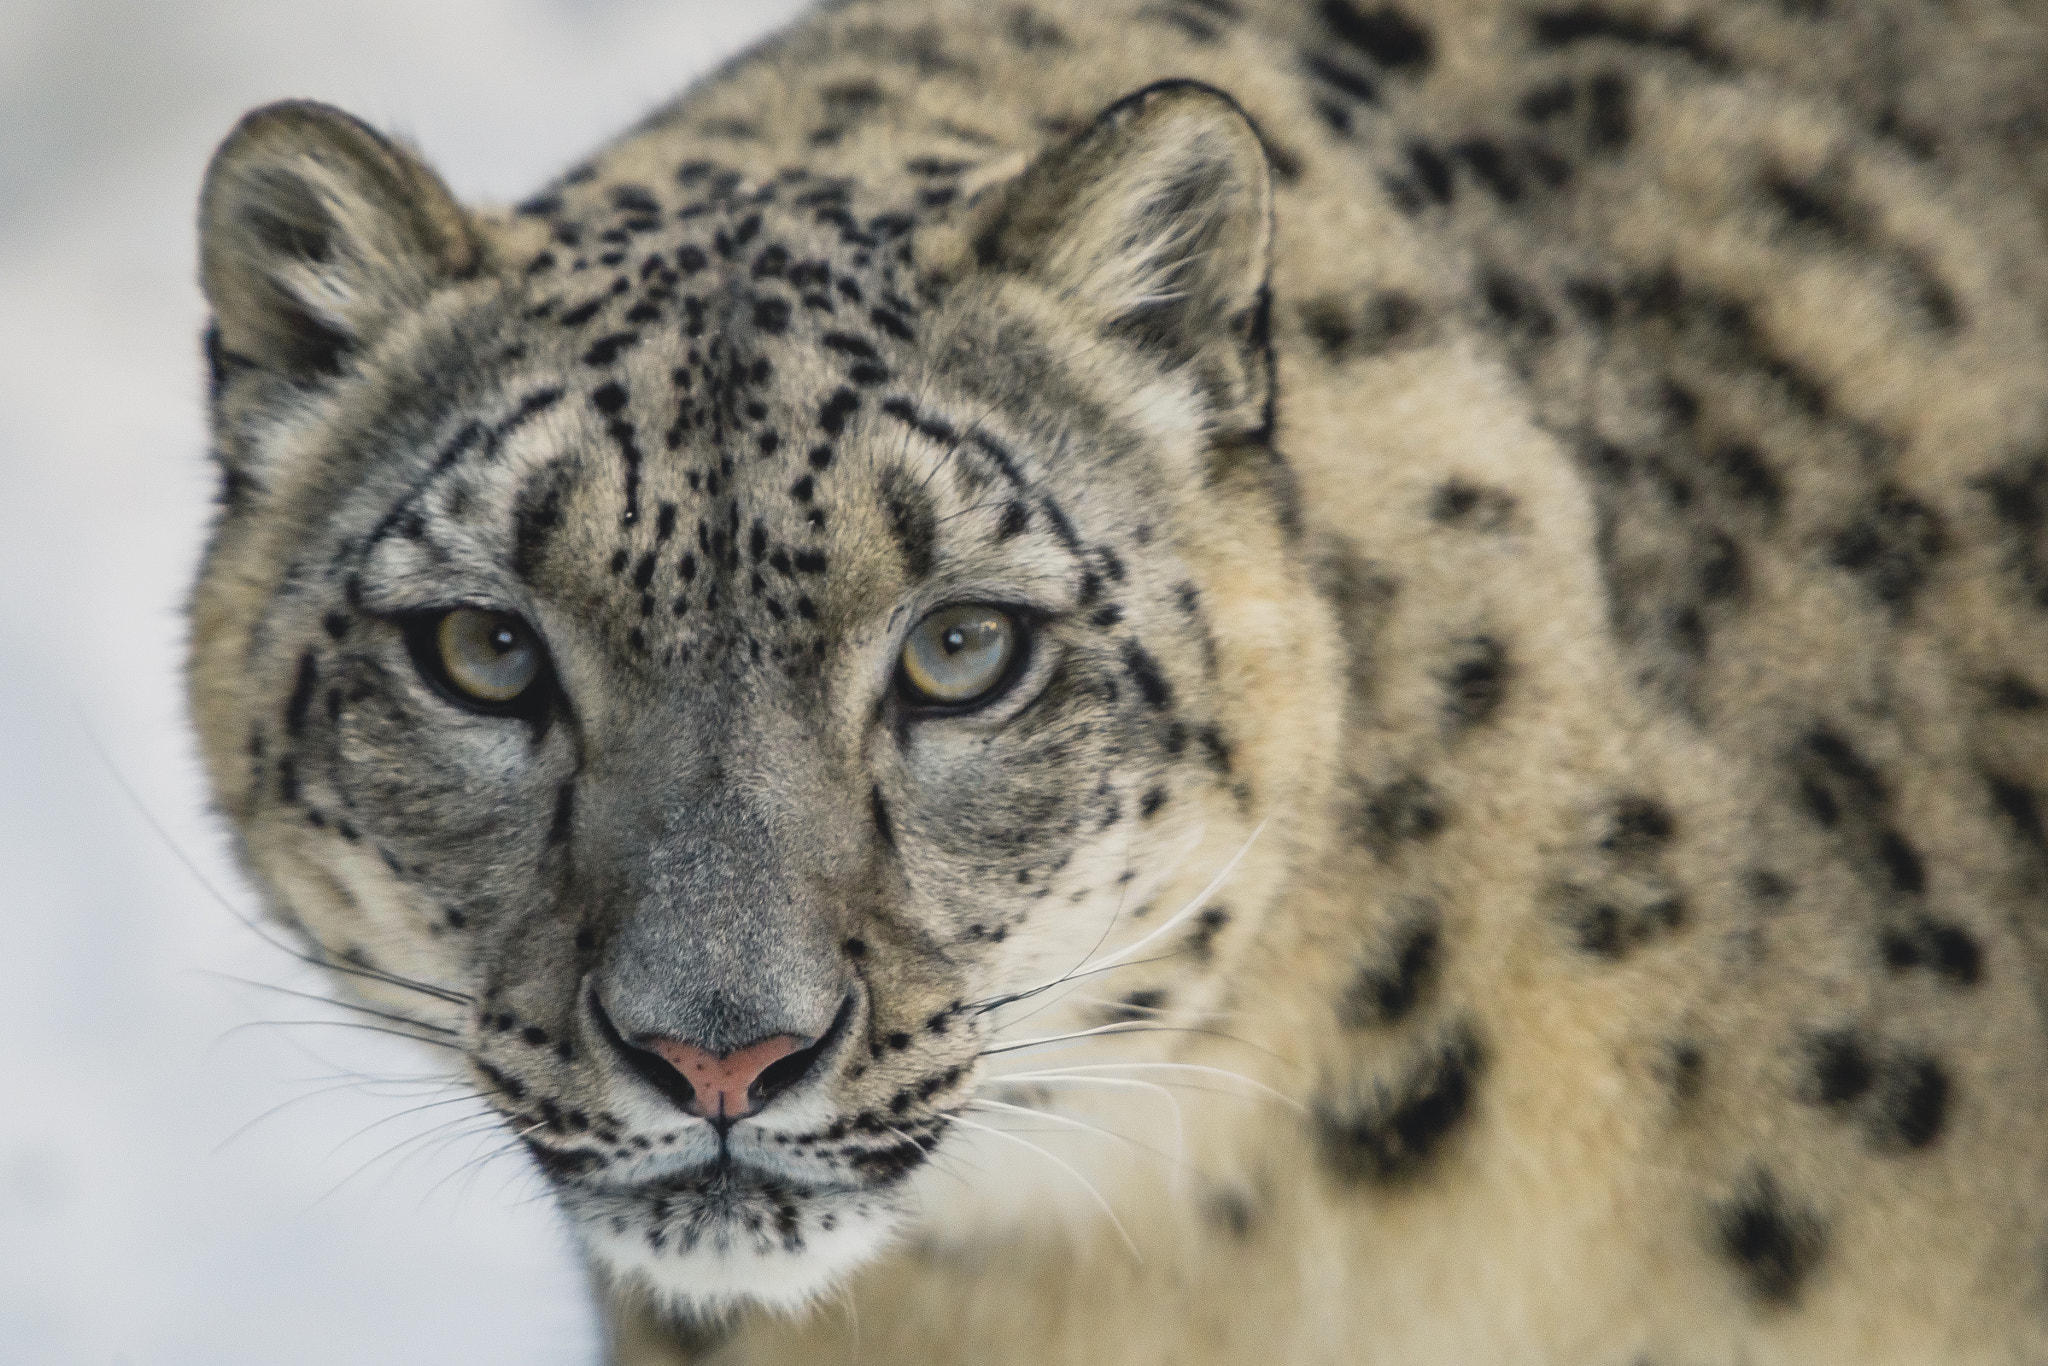 Canon EOS 6D sample photo. Female snow leopard portrait photography